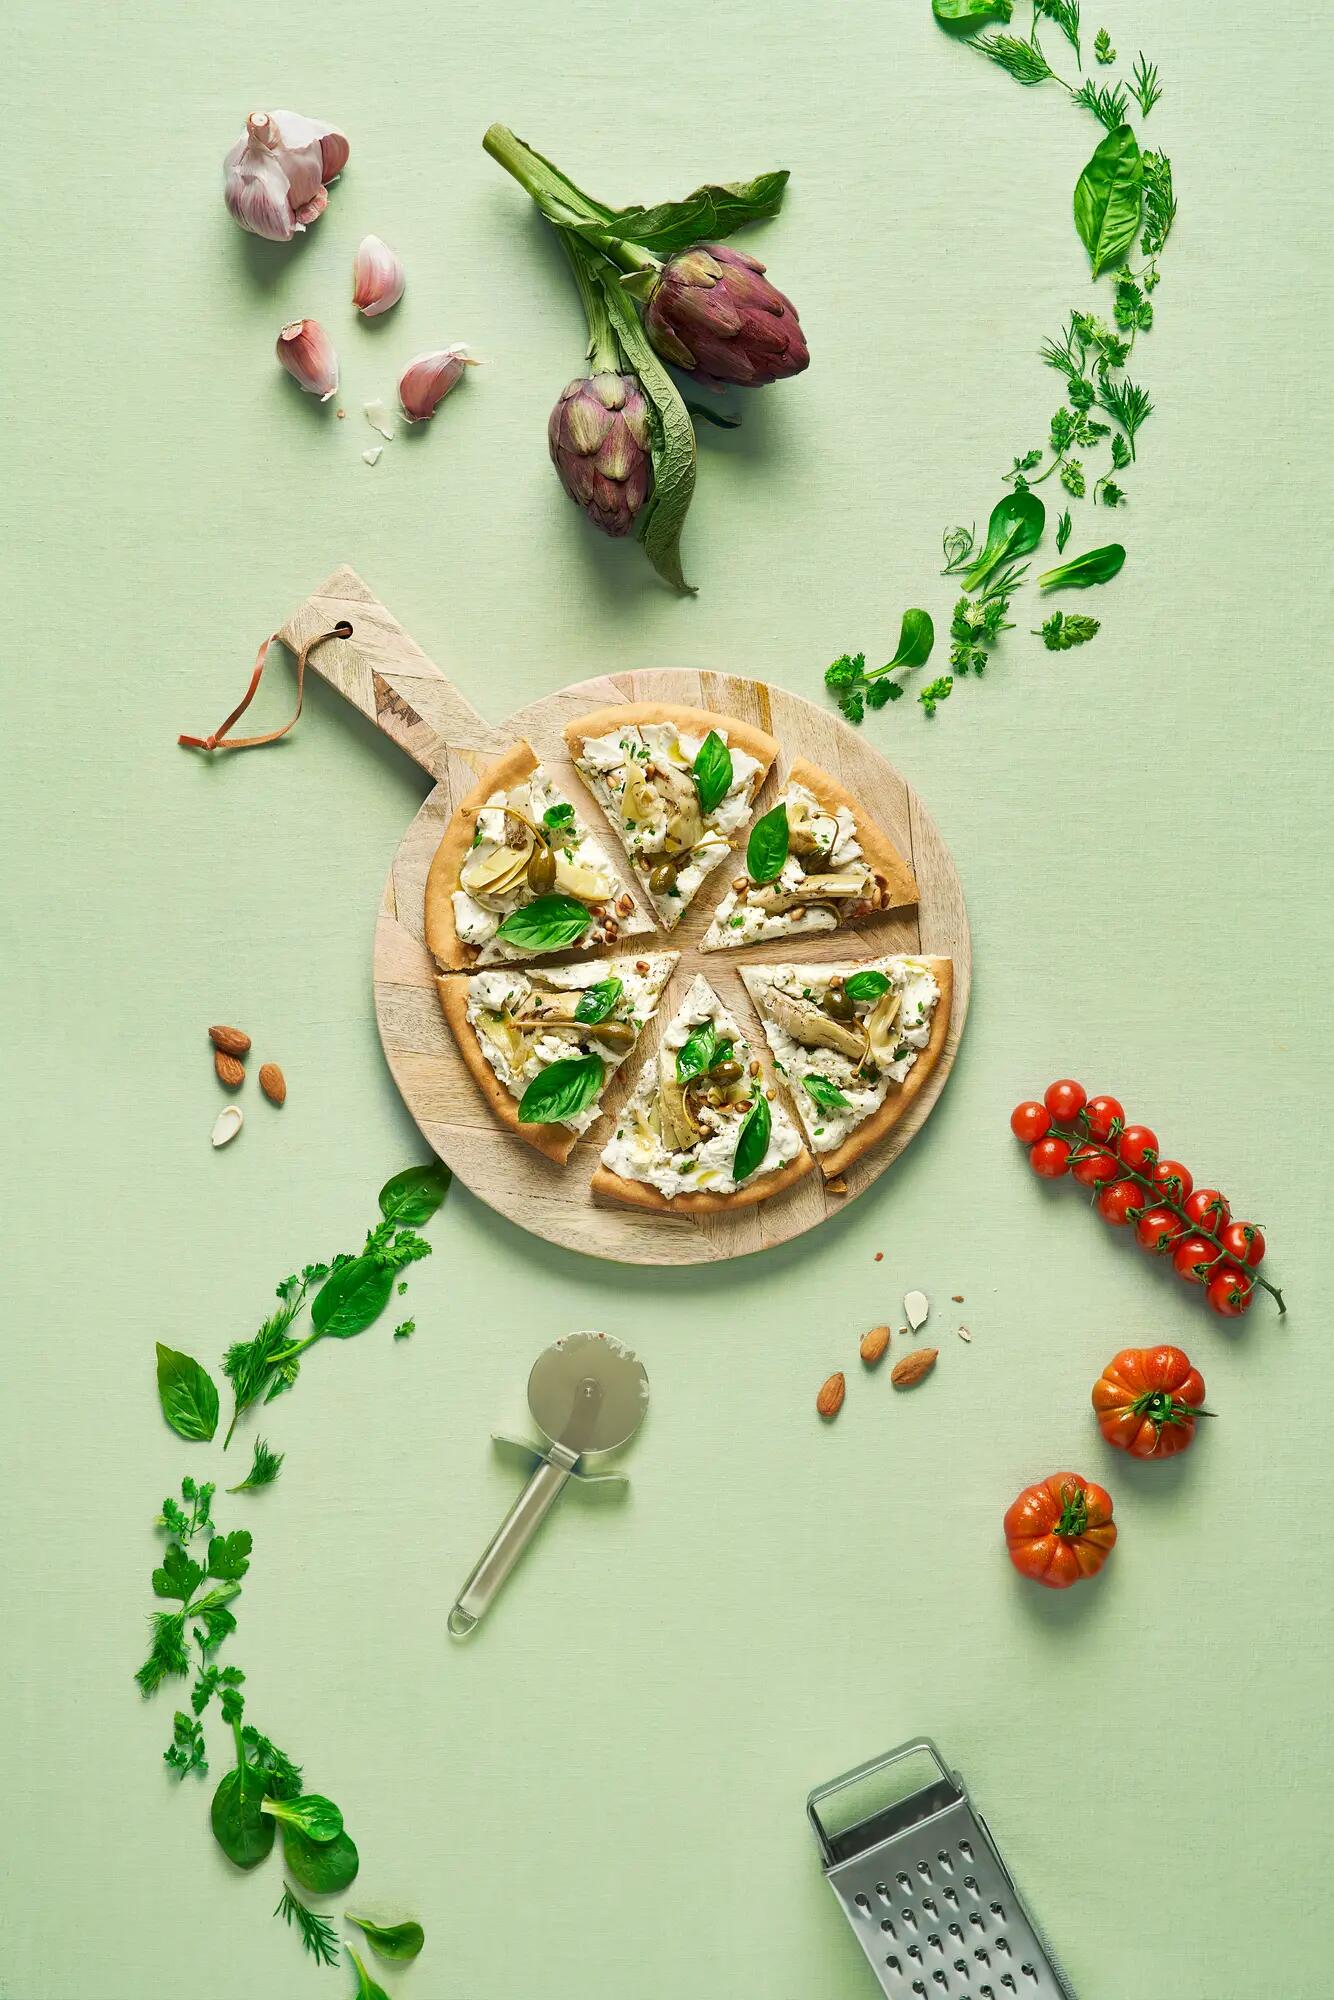 Pizza bianca à la roquette et tartinade végétale